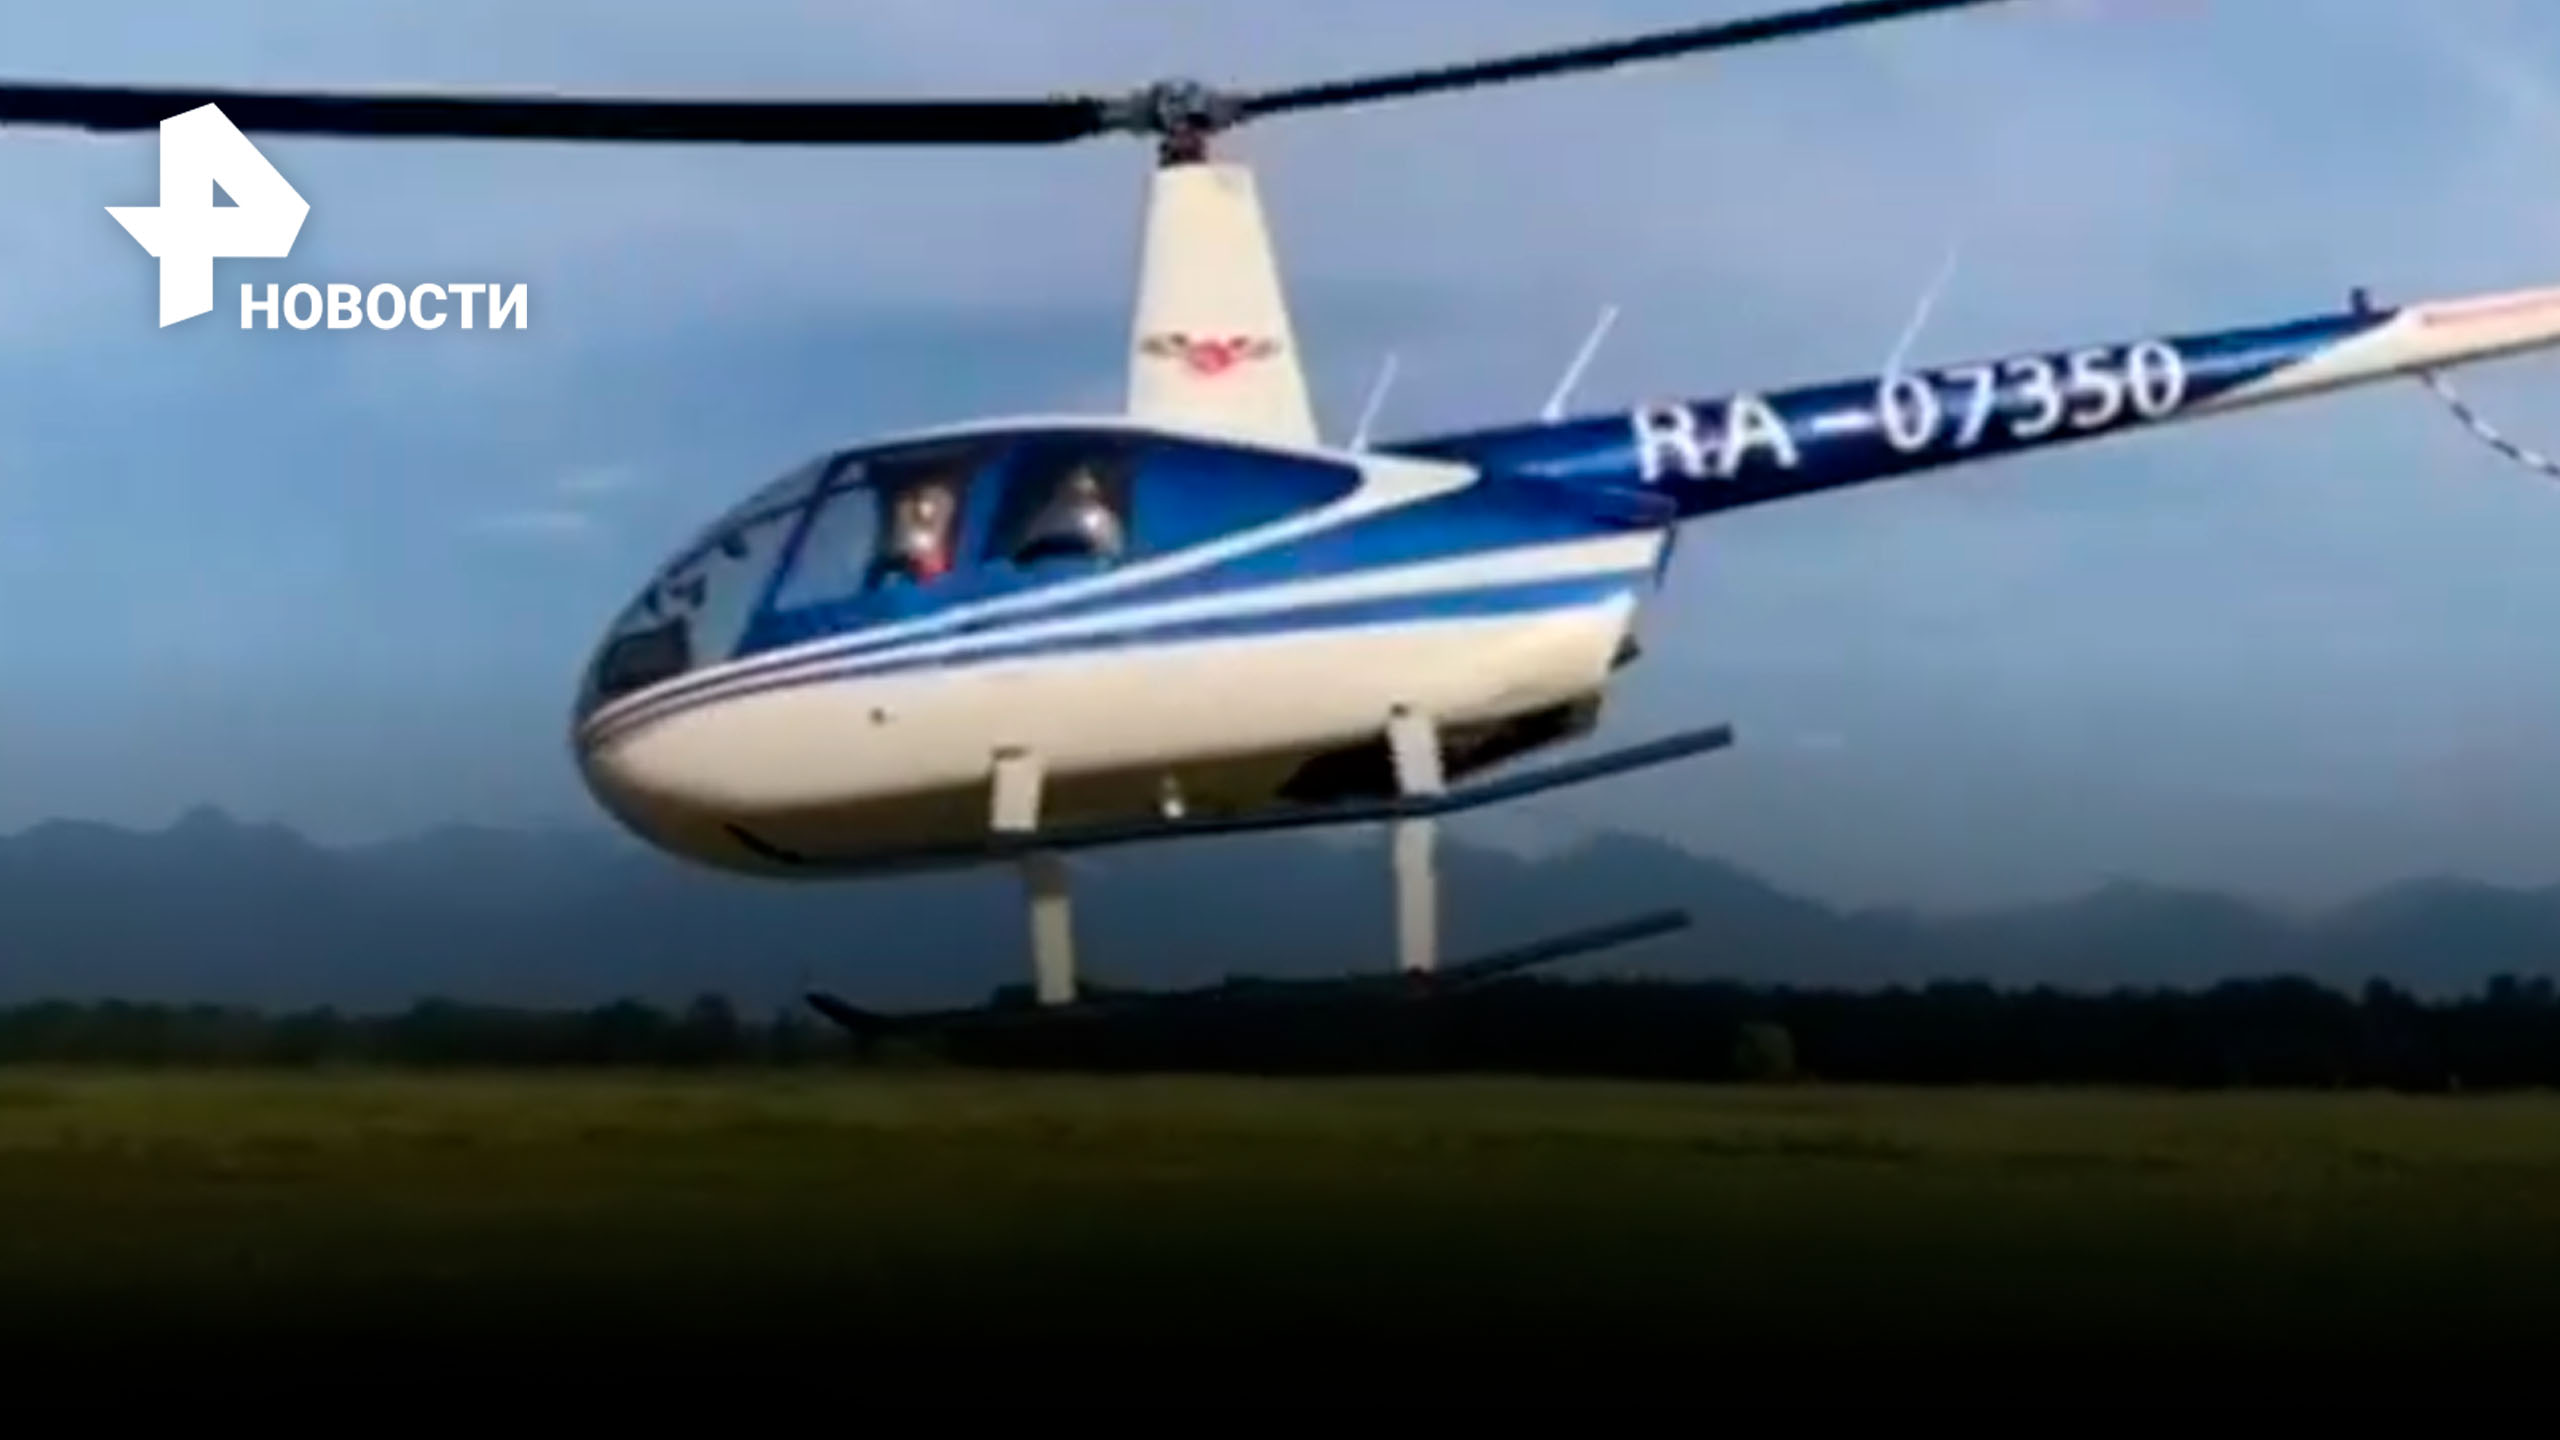 Последние кадры пропавшего Robinson на Камчатке: взлет вертолета с пассажирами / РЕН Новости